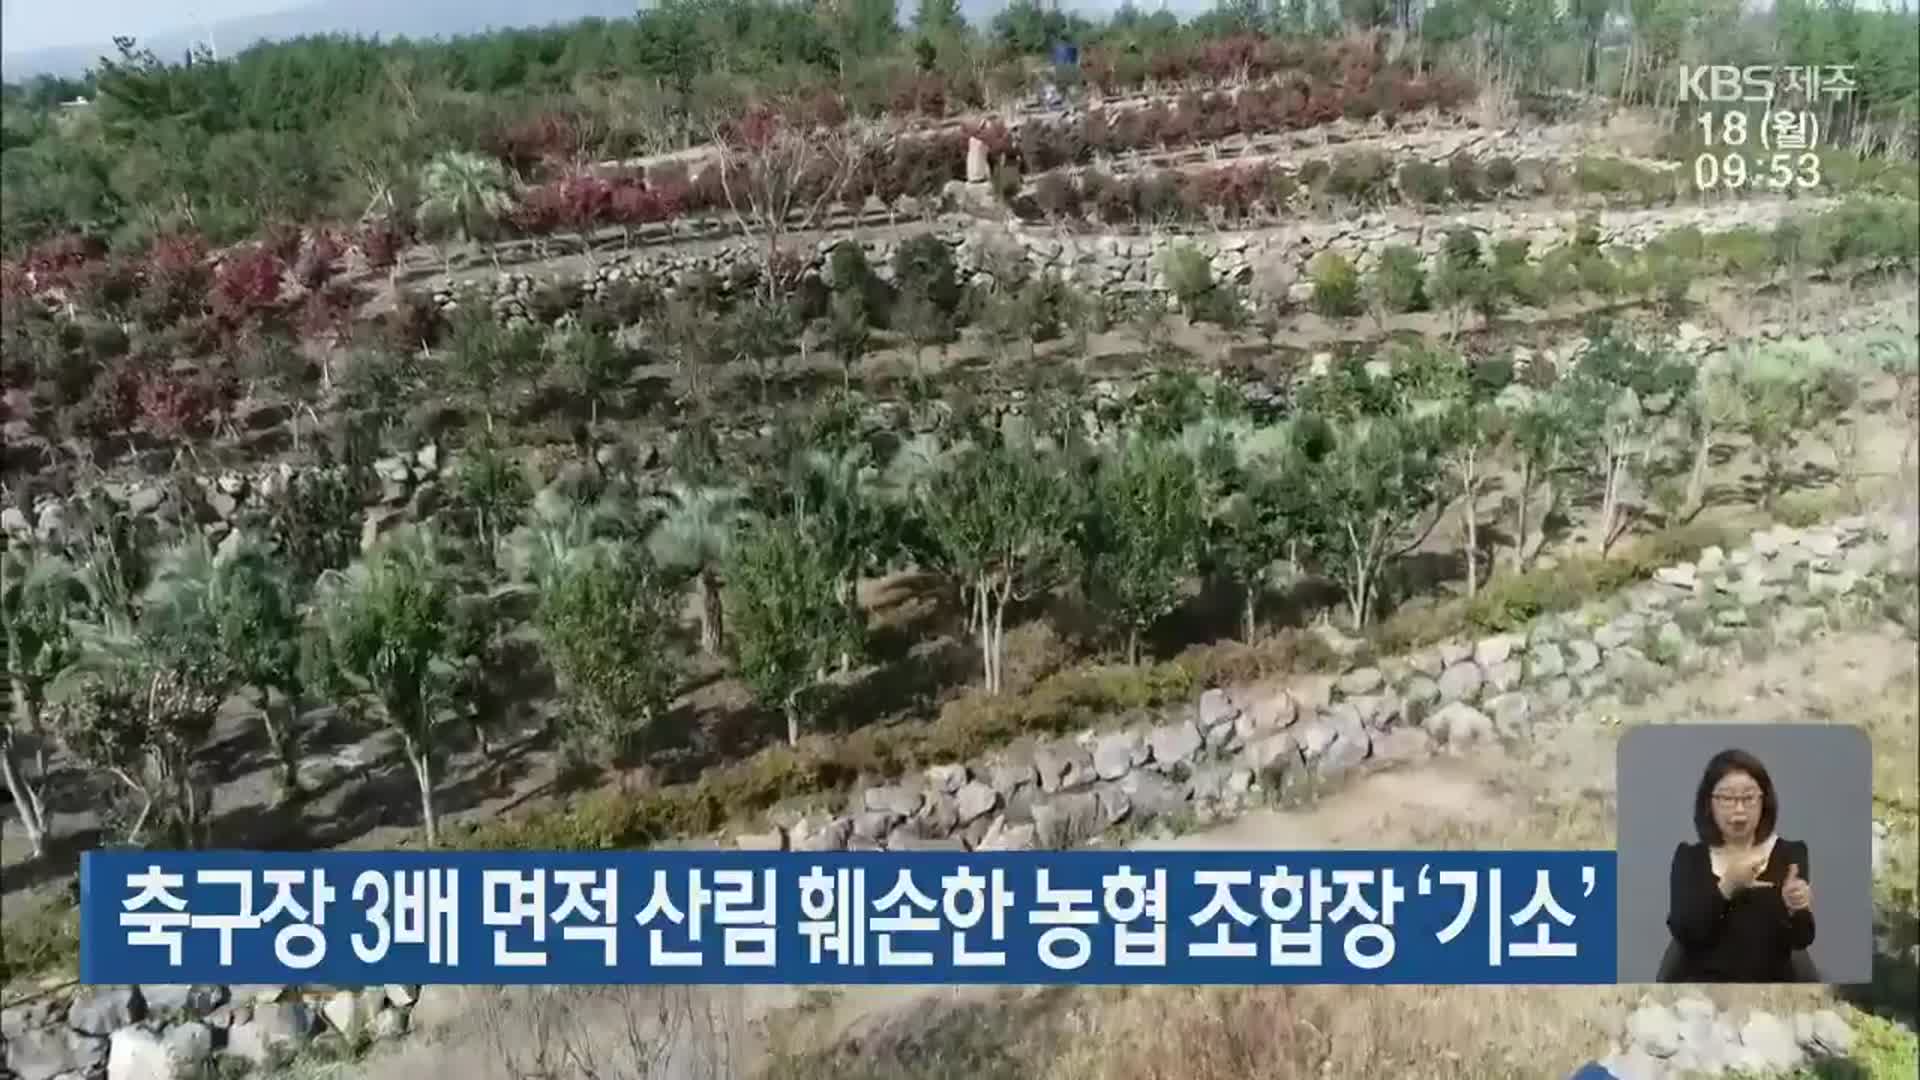 축구장 3배 면적 산림 훼손한 농협 조합장 ‘기소’